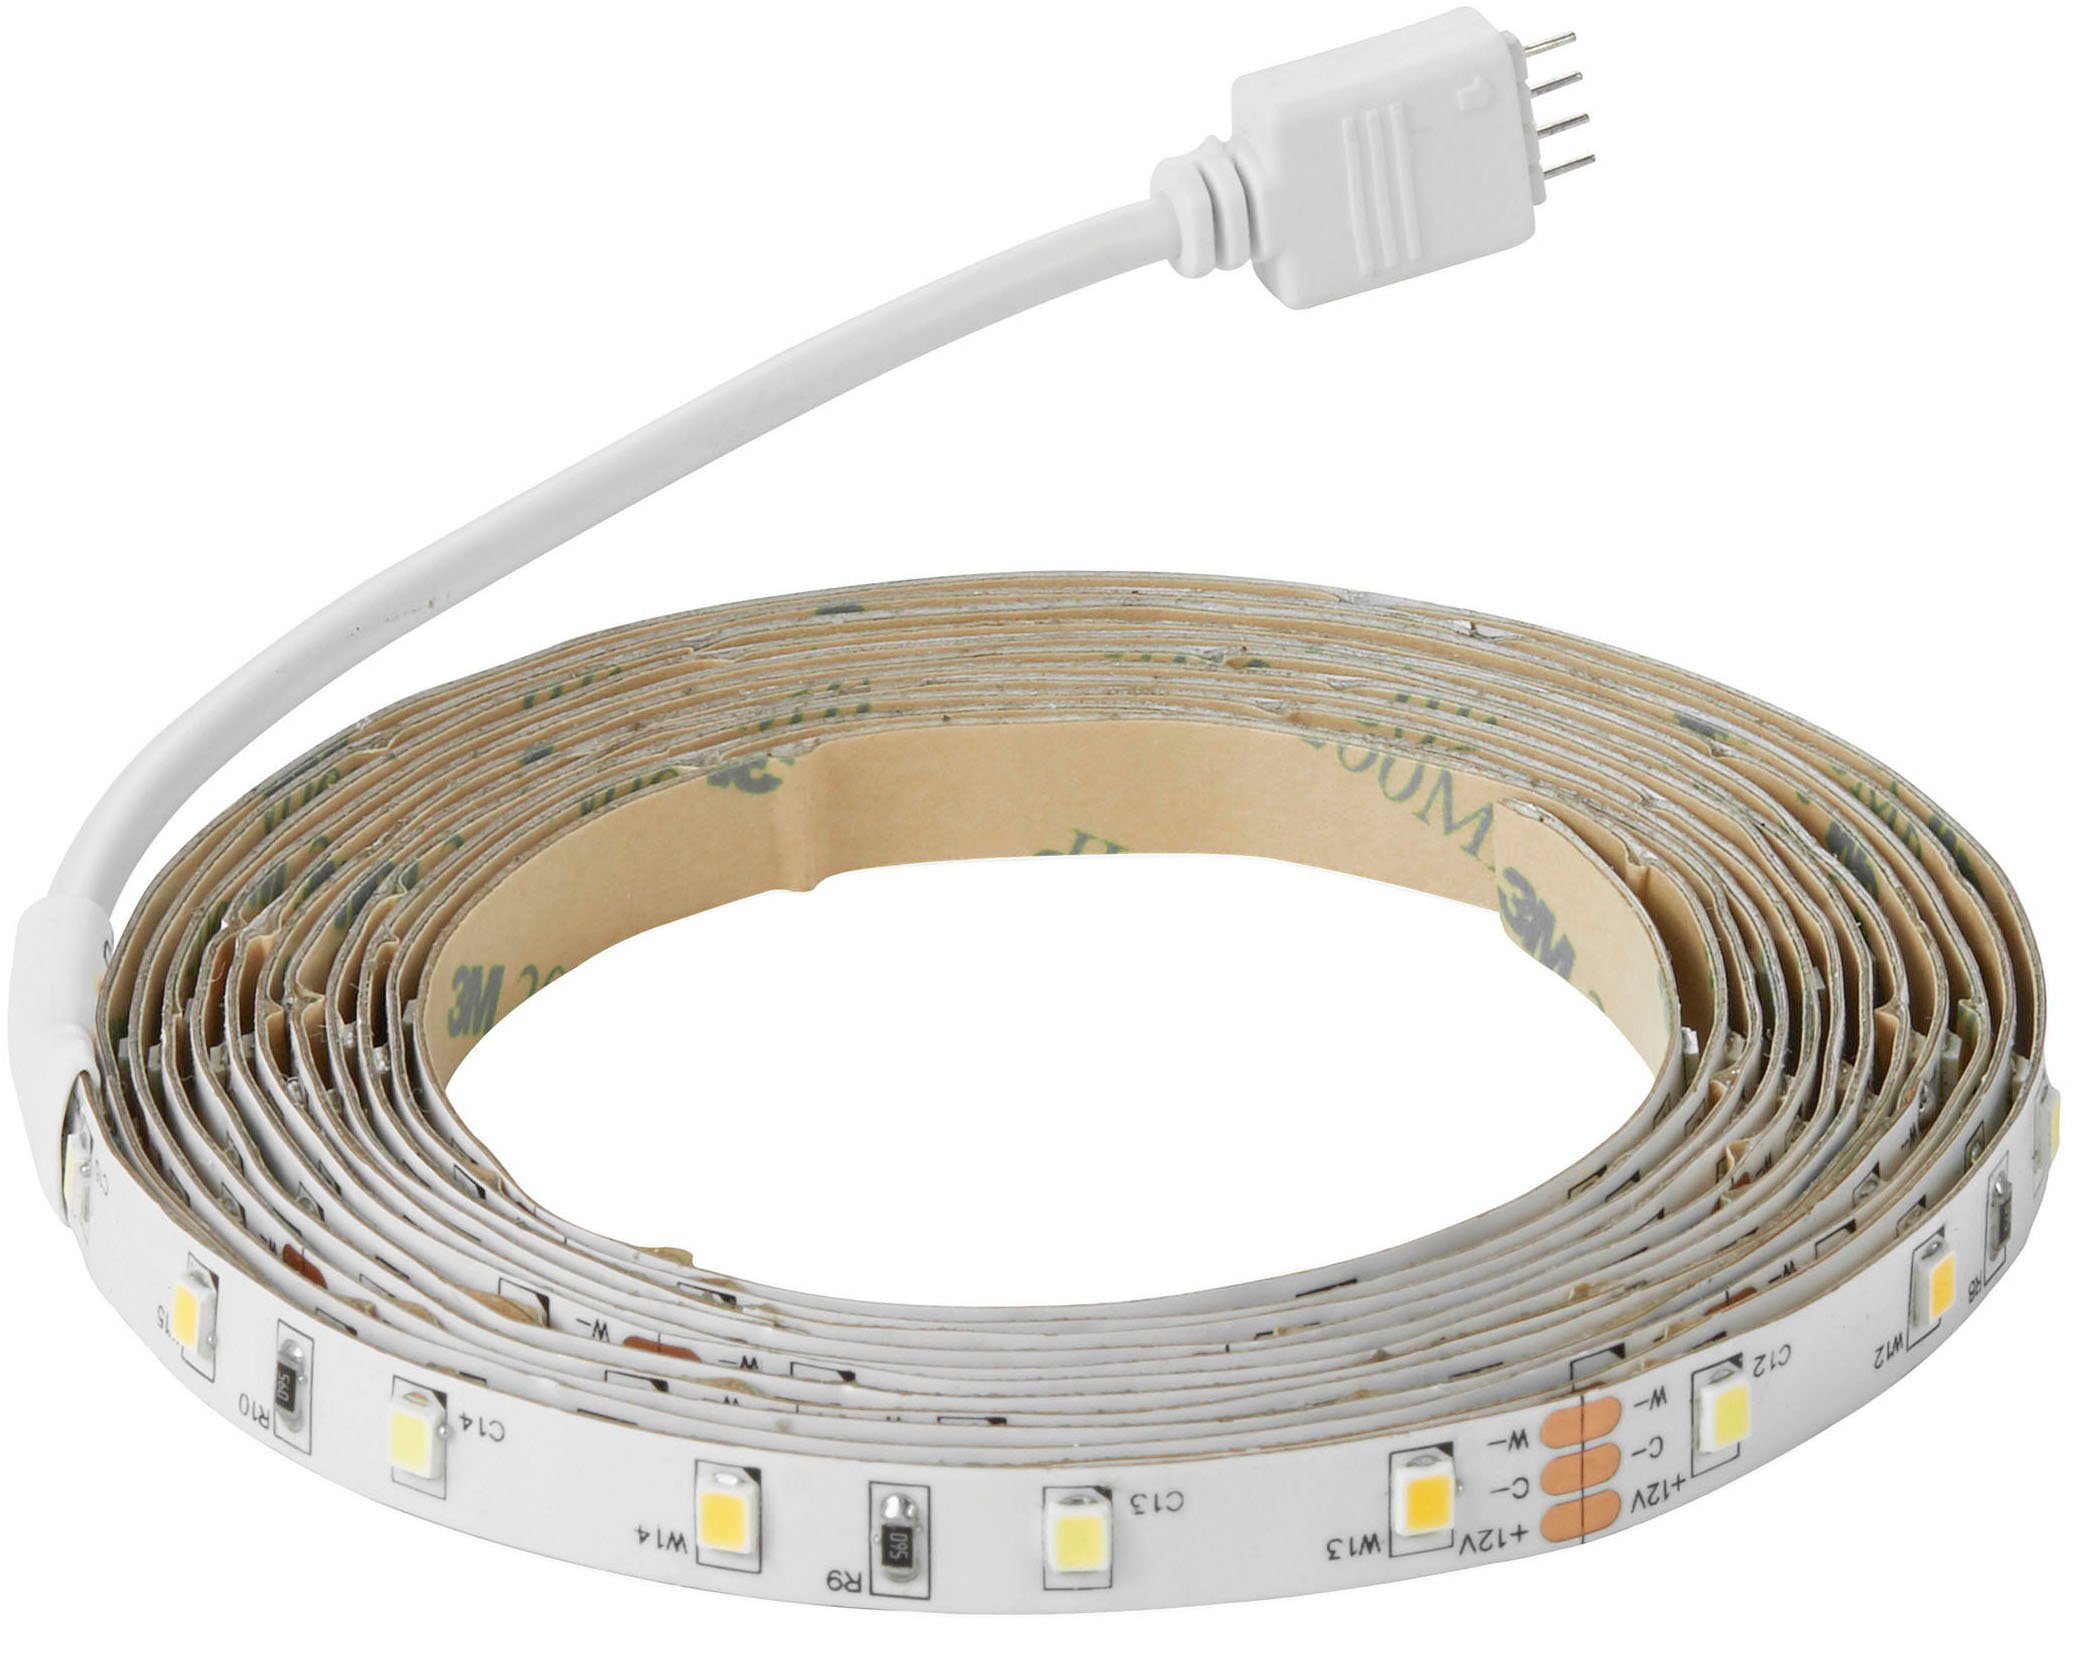 Fernbedienung inkl. LED Nordlux Einstellbares und Licht, Stripe Ledstrip, dimmbares weißes